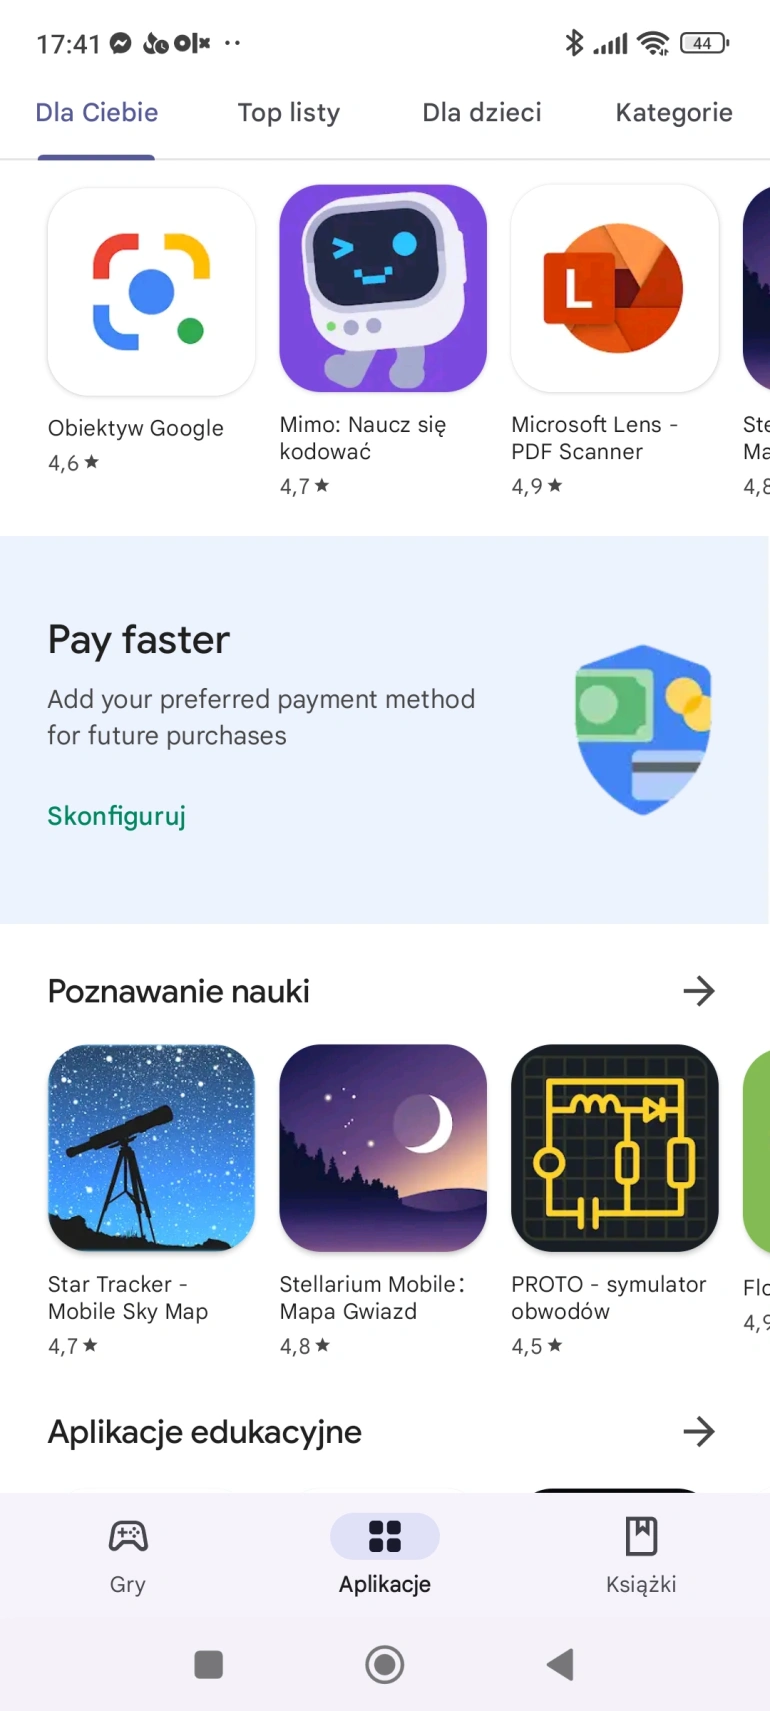 <p>Google Play - oficjalny sklep z aplikacjami na Androida</p>

<p>Źródło: Daniel Olszewski / Computerworld</p>